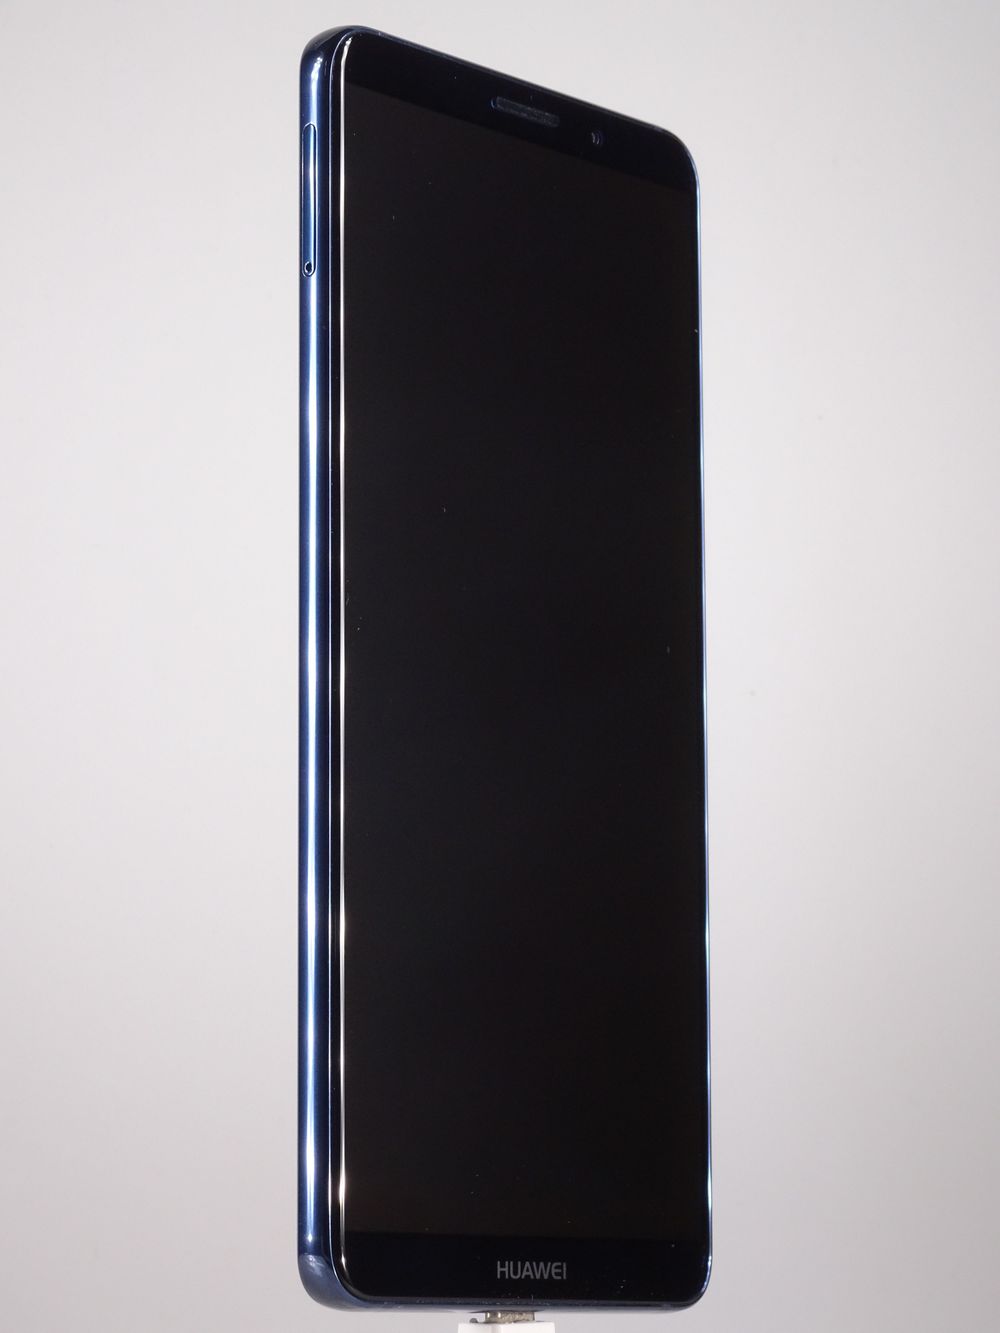 Мобилен телефон Huawei, Mate 10 Pro, 128 GB, Midnight Blue,  Като нов